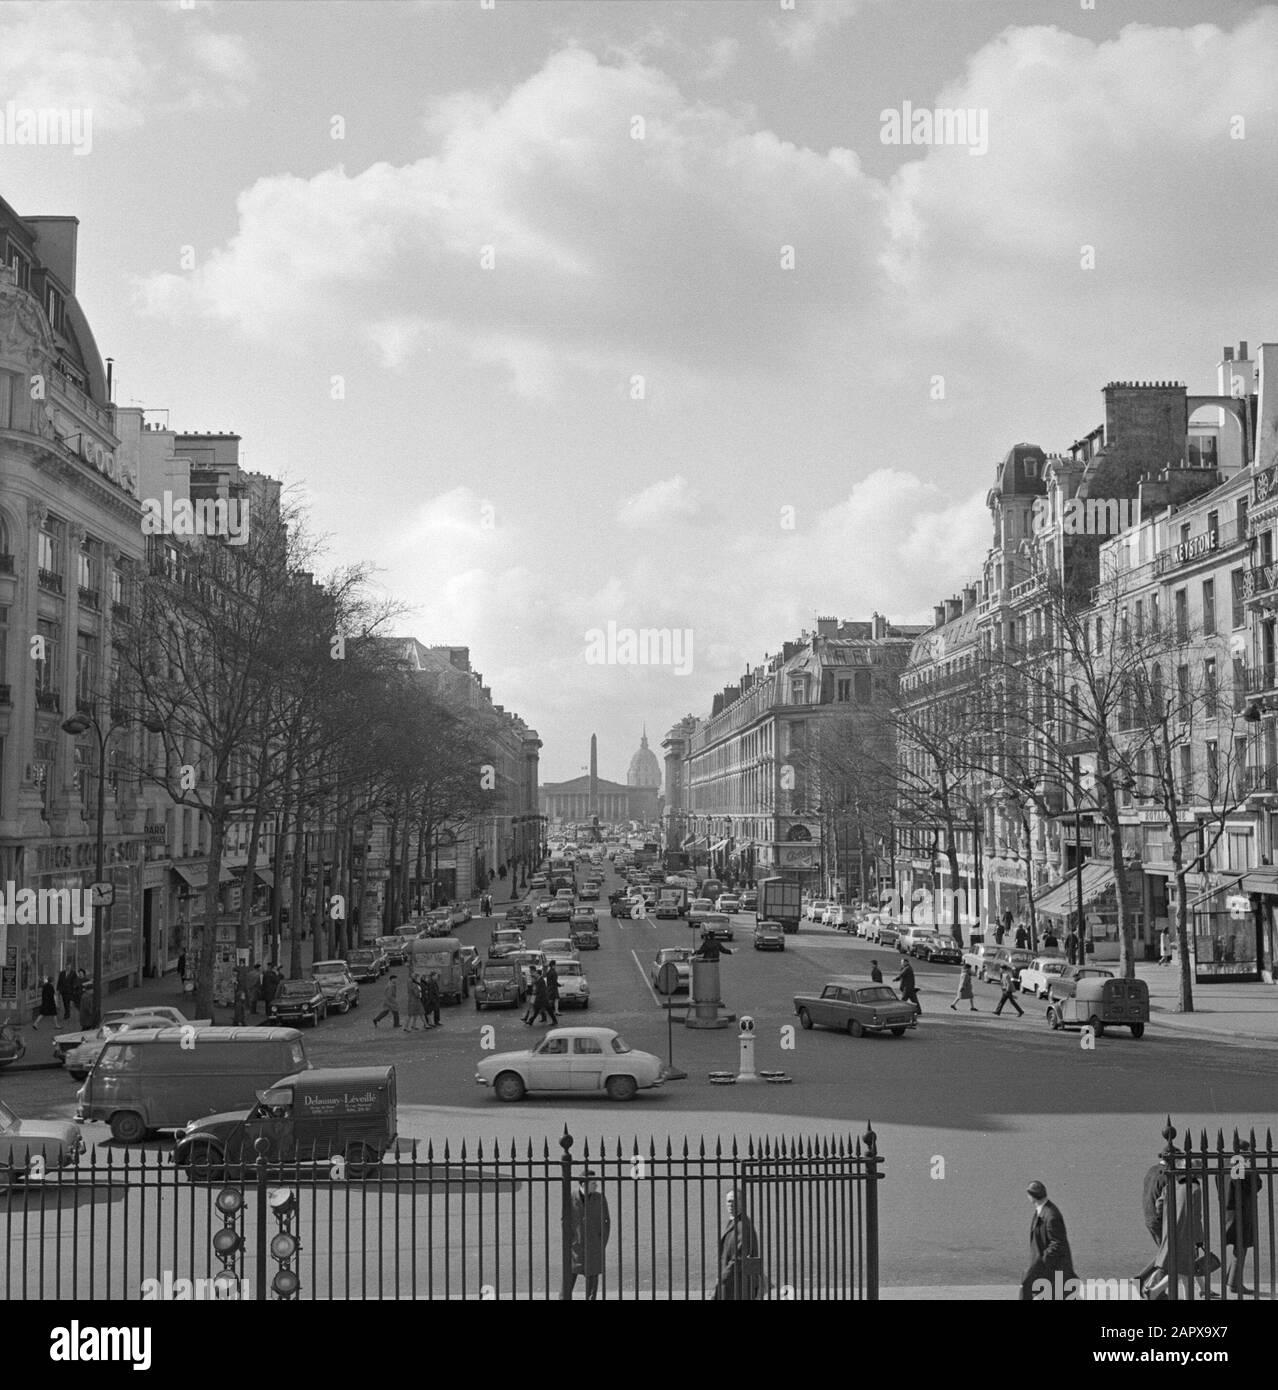 Pariser Bilder [la vita di strada di Parigi] Rue Royale Data: 1965 luogo: Francia, Parigi Parole Chiave: Automobili, immagini di strada, traffico Foto Stock